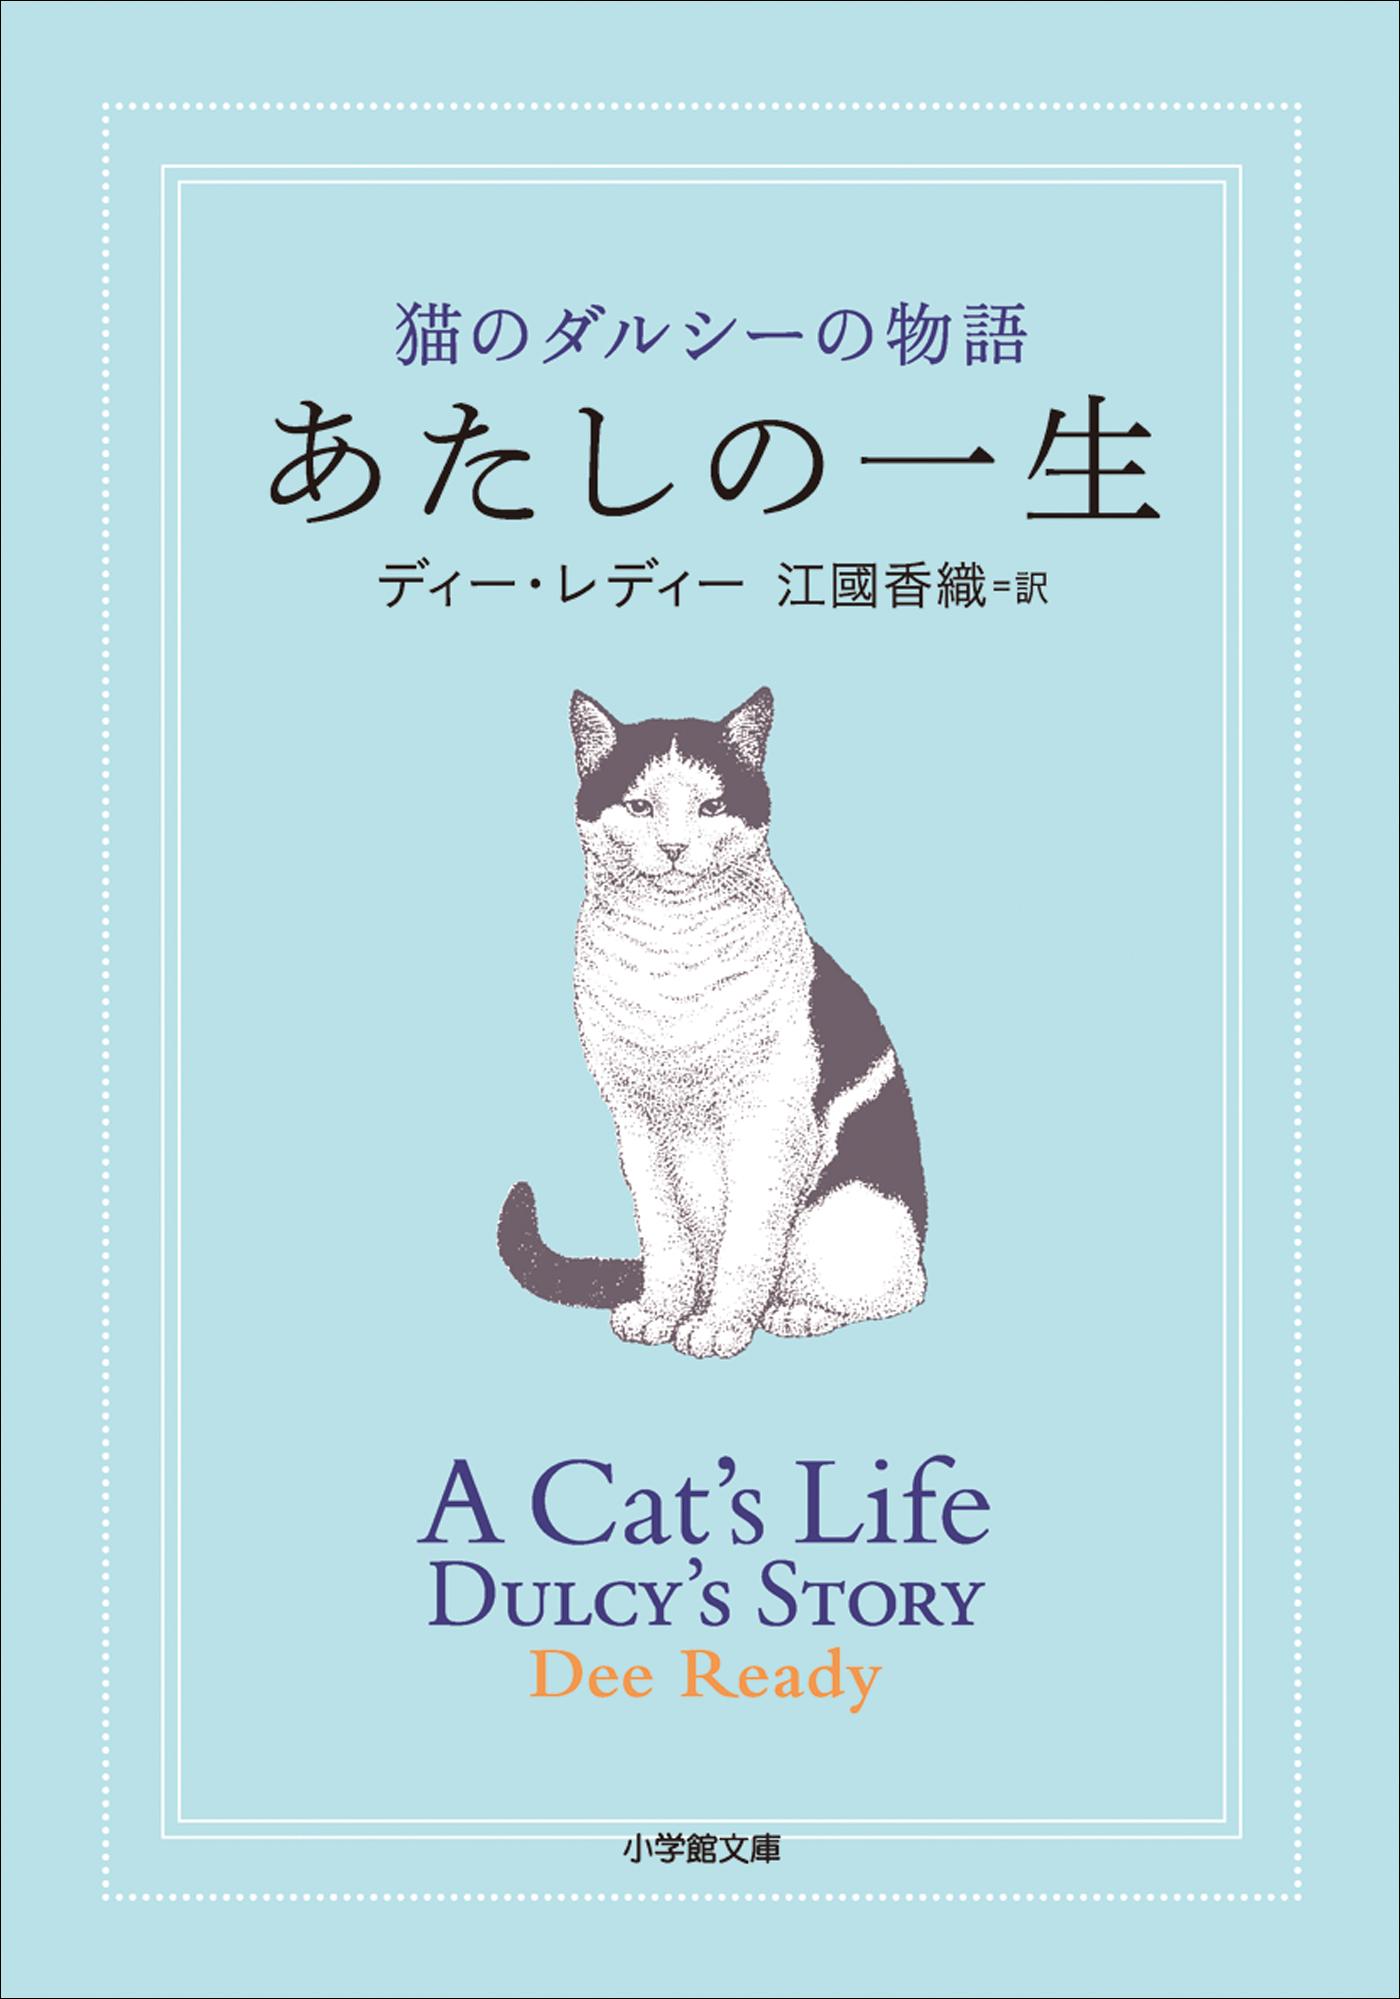 あたしの一生 猫のダルシーの物語